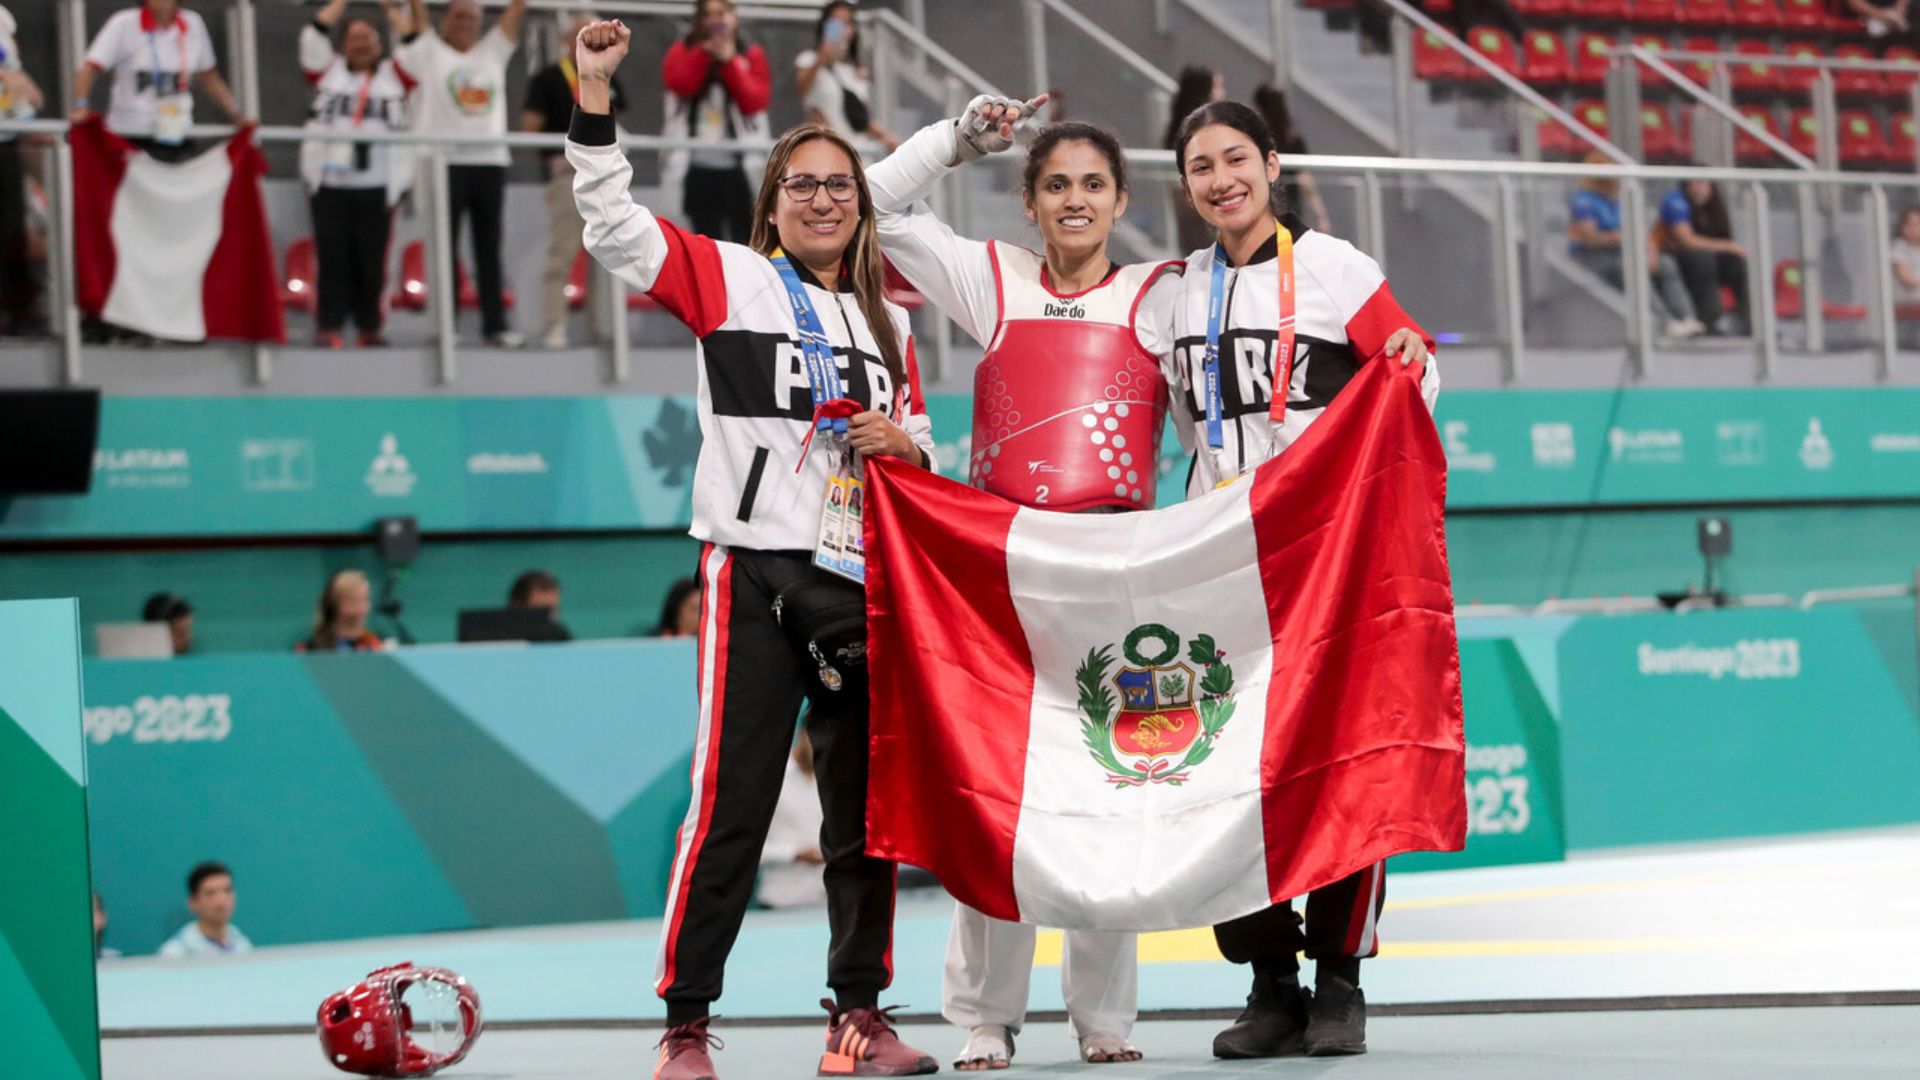 Para Taekwondo: Three Finals with Golds for Mexico, Peru, Brazil